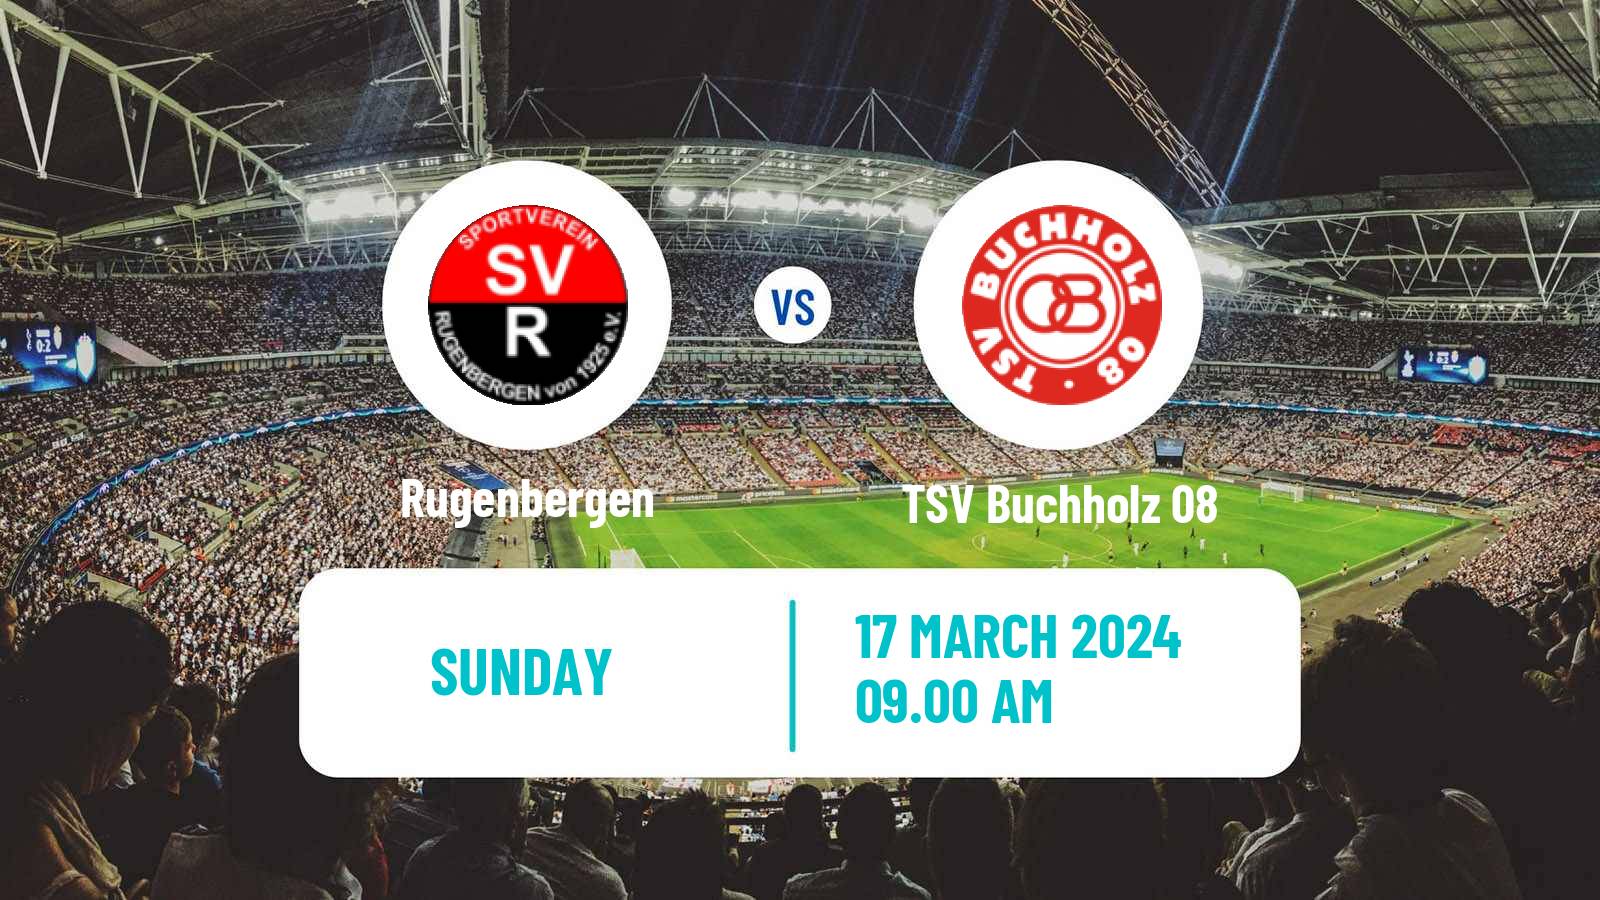 Soccer German Oberliga Hamburg Rugenbergen - TSV Buchholz 08